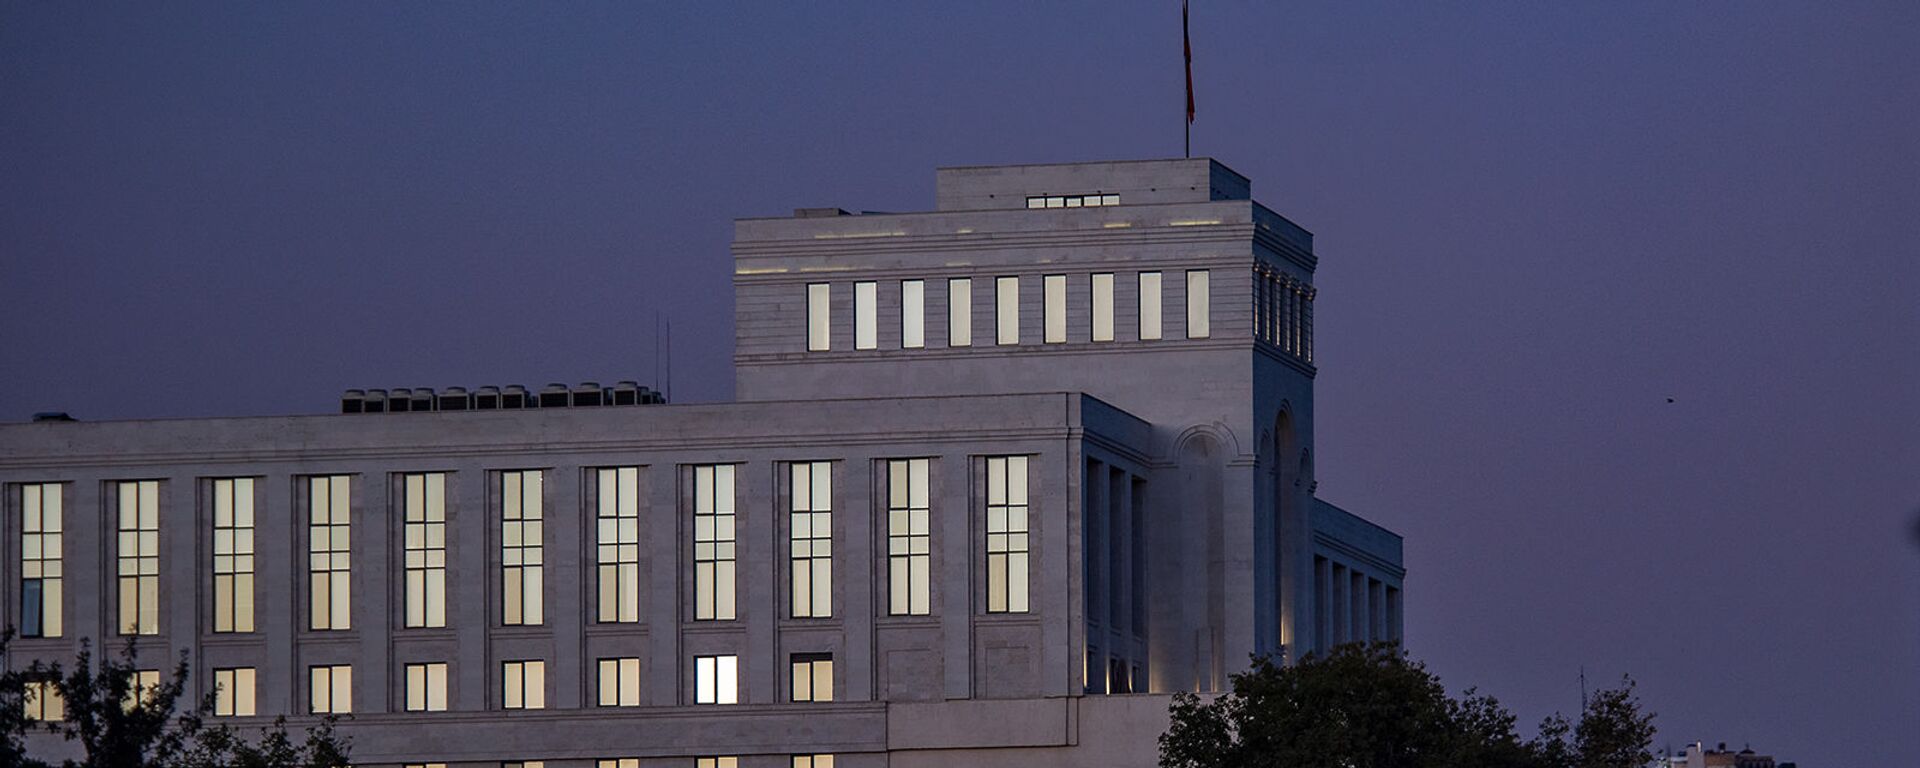 Здание Министерства иностранных дел Армении - Sputnik Արմենիա, 1920, 06.05.2021